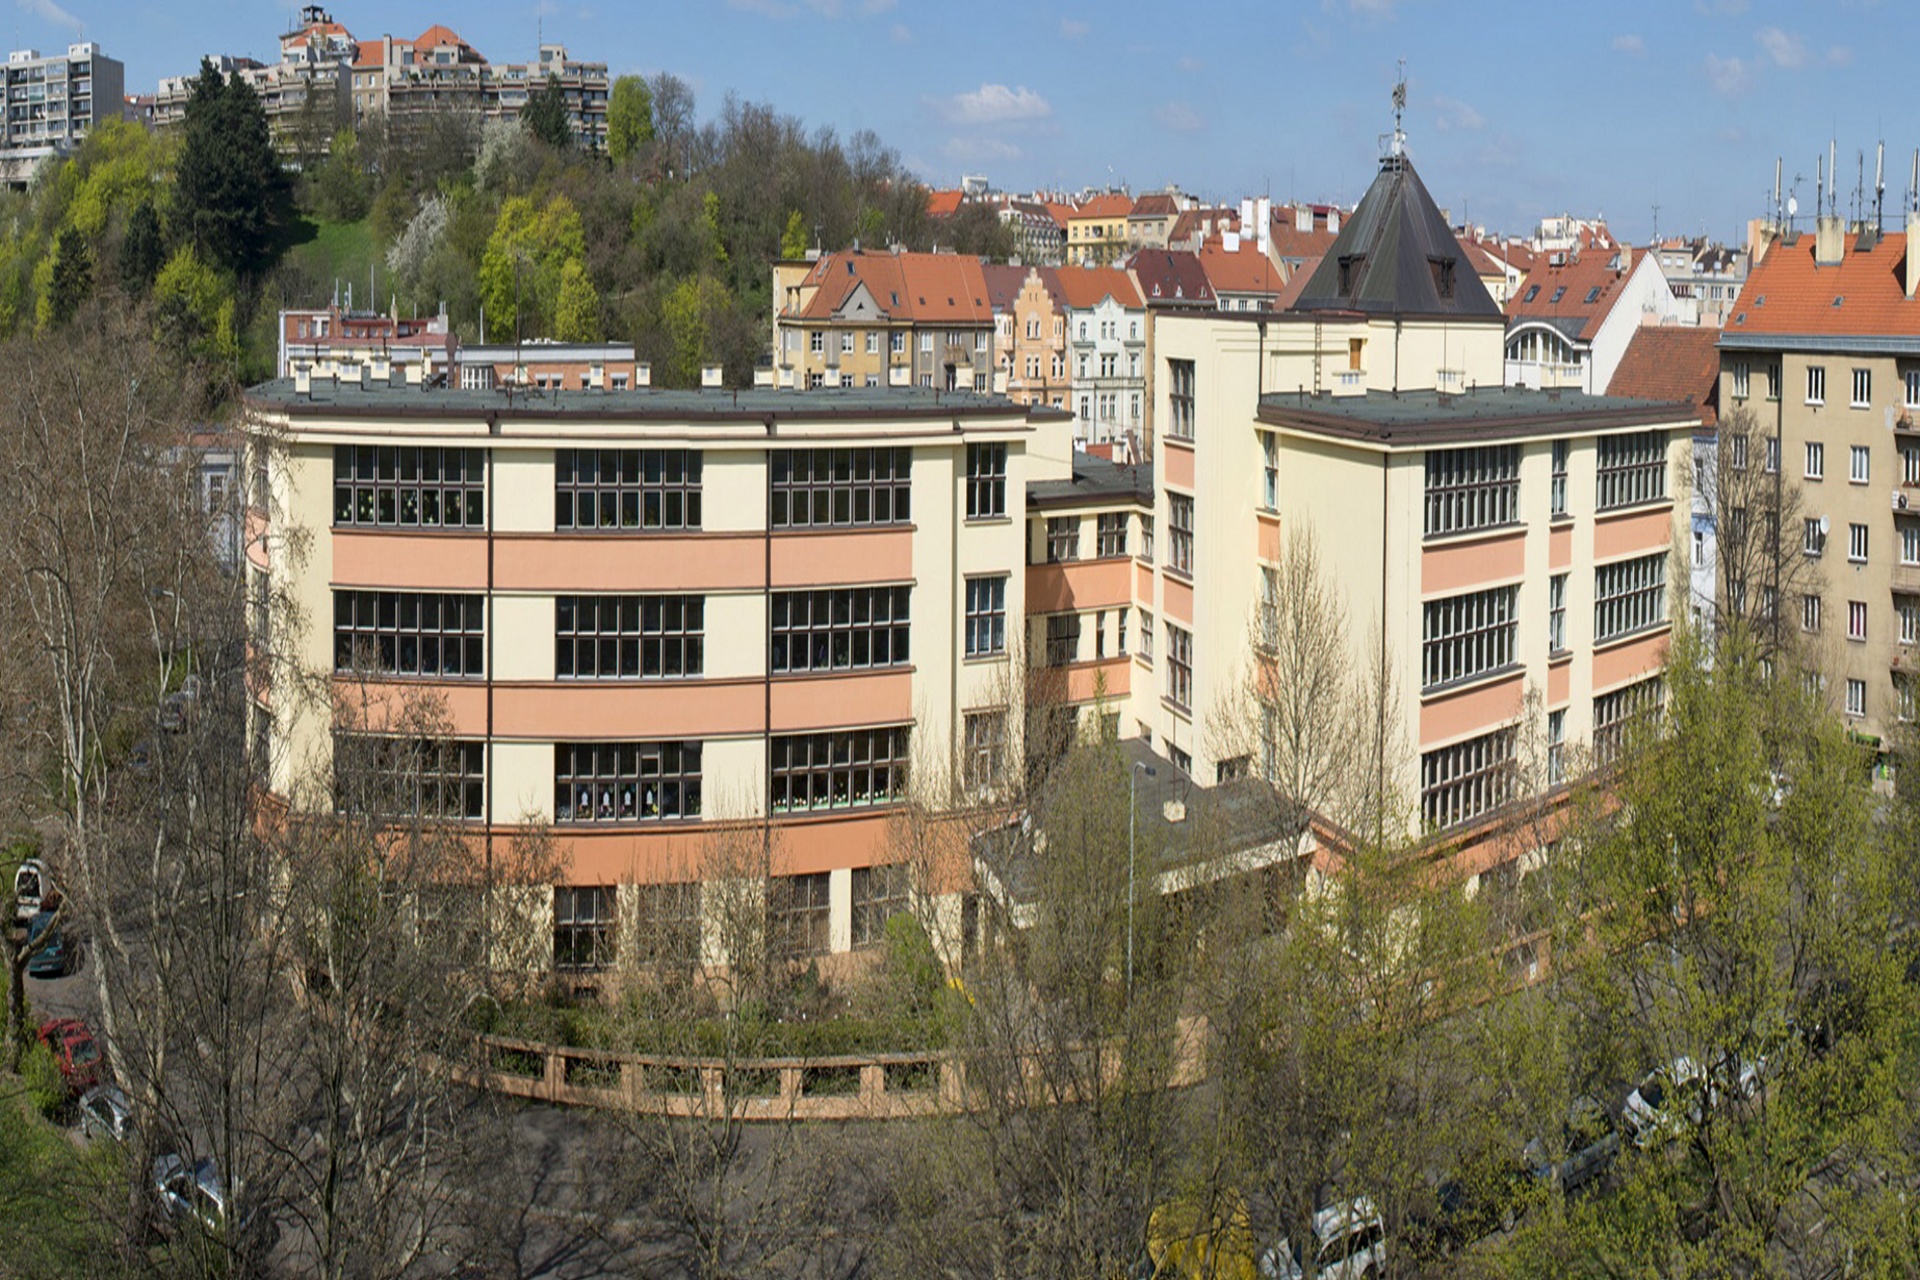 Křesťanská střední škola, základní škola a mateřská škola Elijáš, Praha 4 -  Michle (Praha, Michle) •